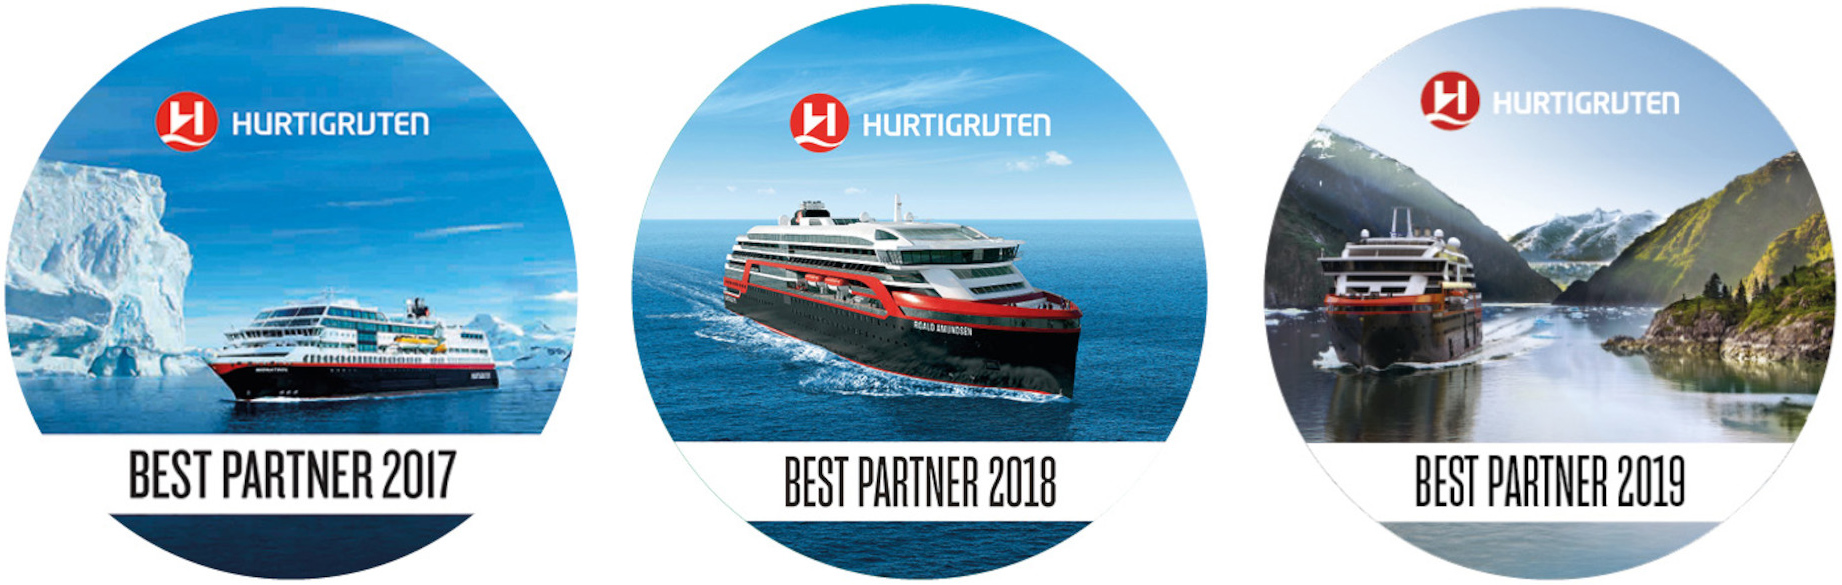 Best Partner Reisebuero von Hurtigruten in den Jahren 2017, 2018 und 2019